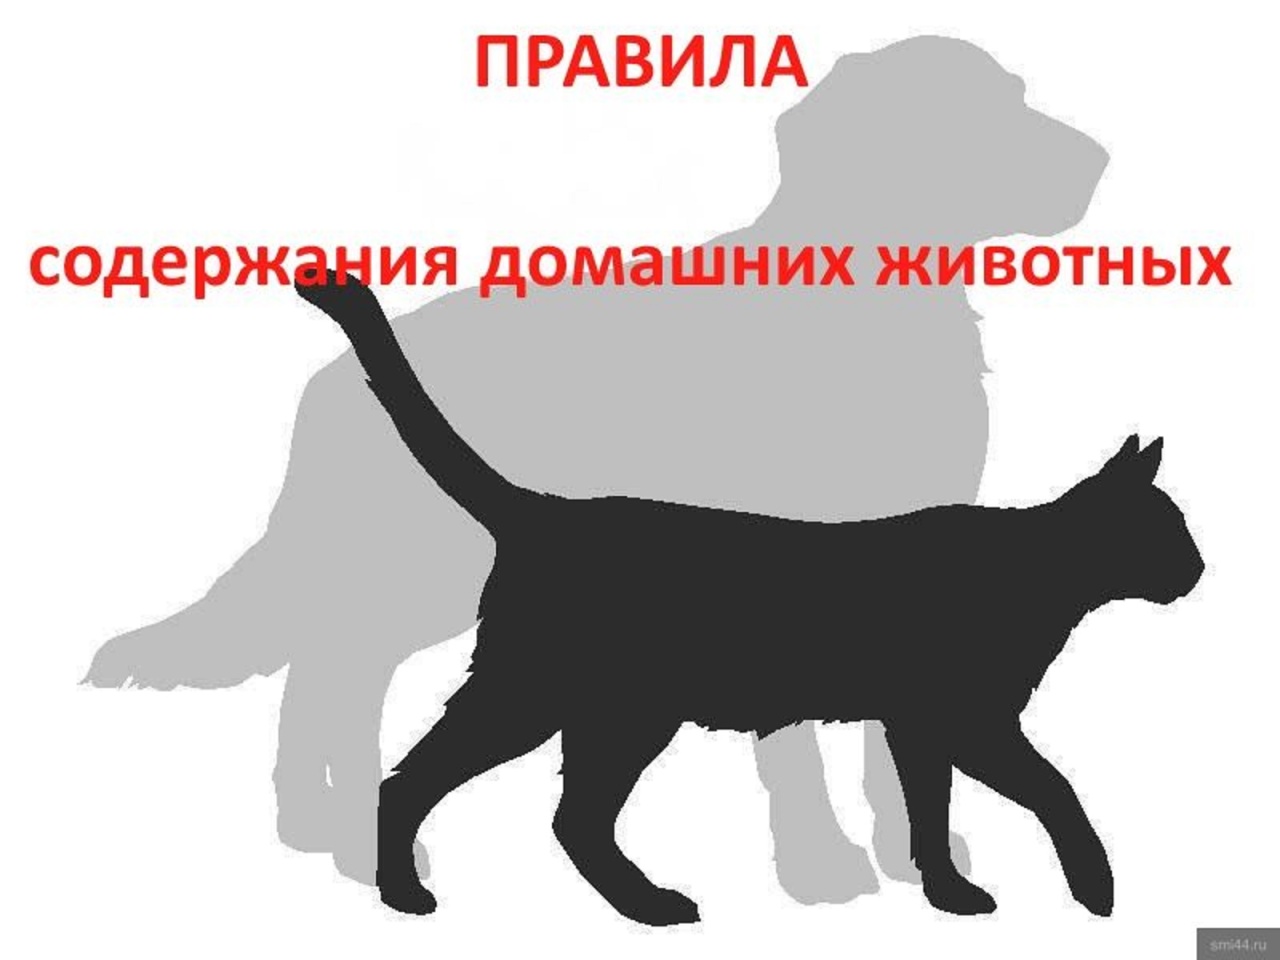 Новые требования к содержанию домашних животных ввели в Алтайском крае.